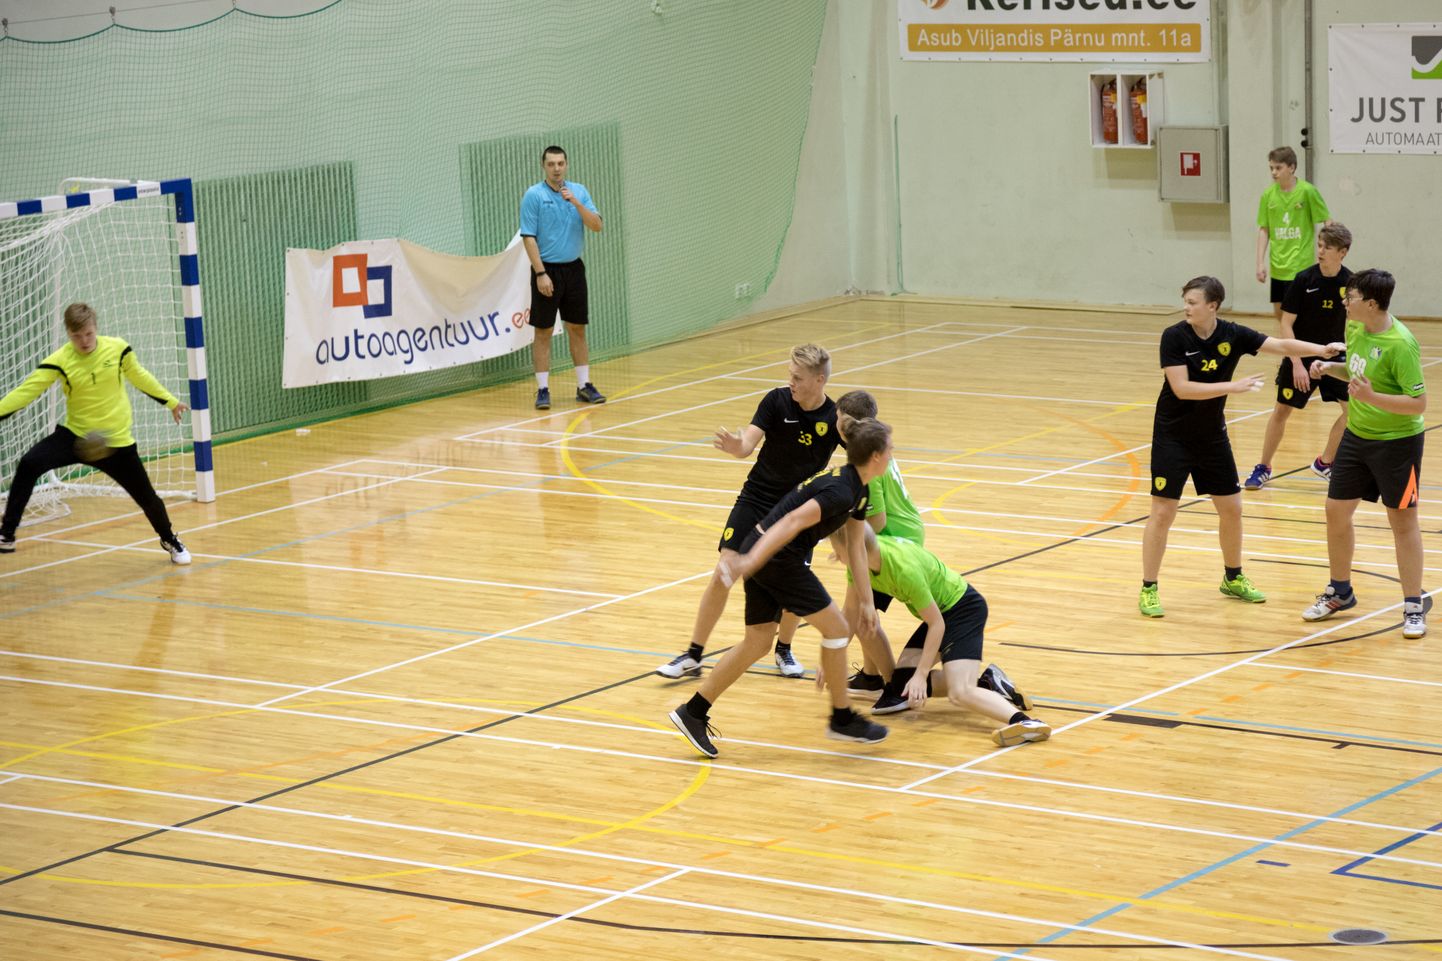 Nädalavahetusel on Viljandi spordihoones käsipalli noormeeste B-vanuseklassi karikavõistlused.